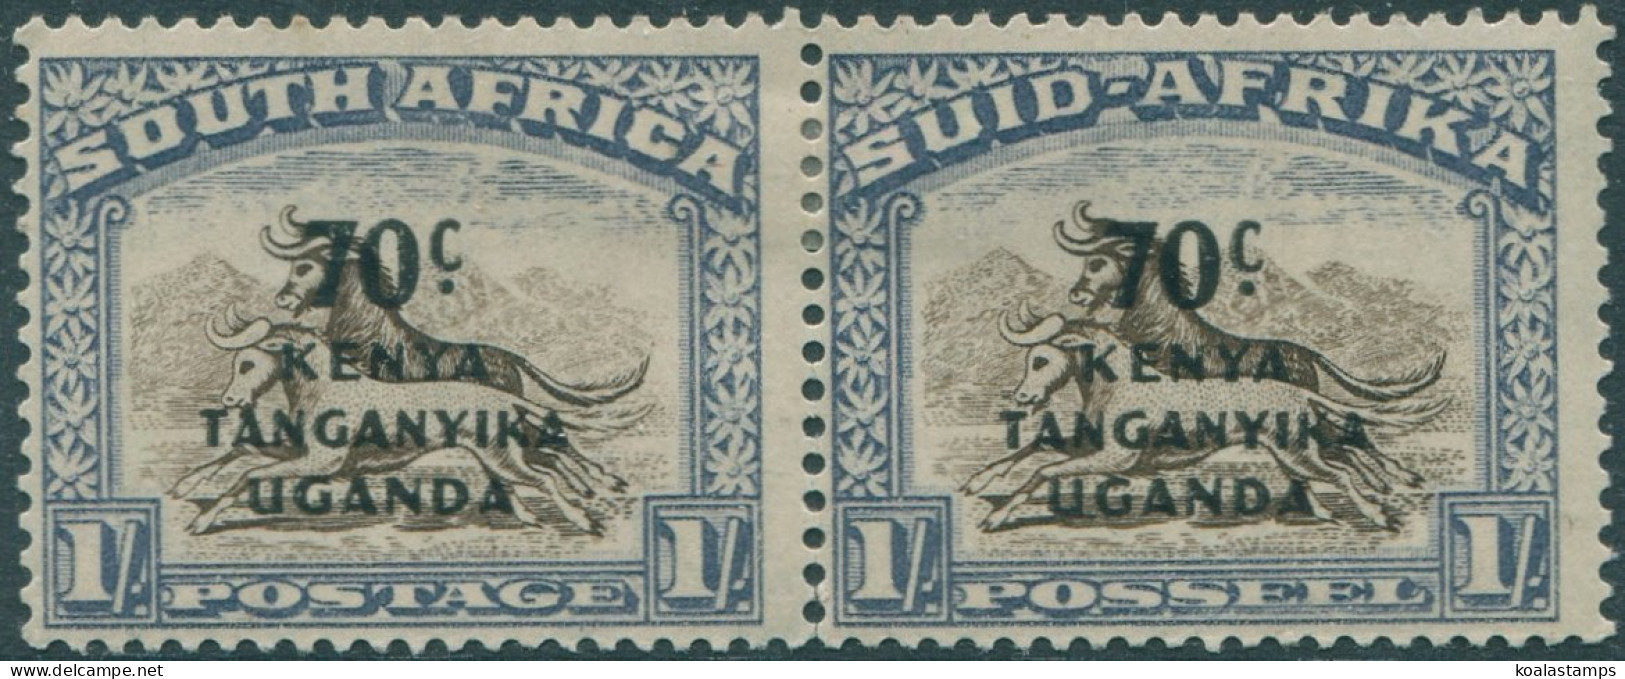 Kenya Uganda And Tanganyika 1941 SG154 70c Ovpt On 1s Brown And Blue SA Pair MH - Kenya, Oeganda & Tanganyika